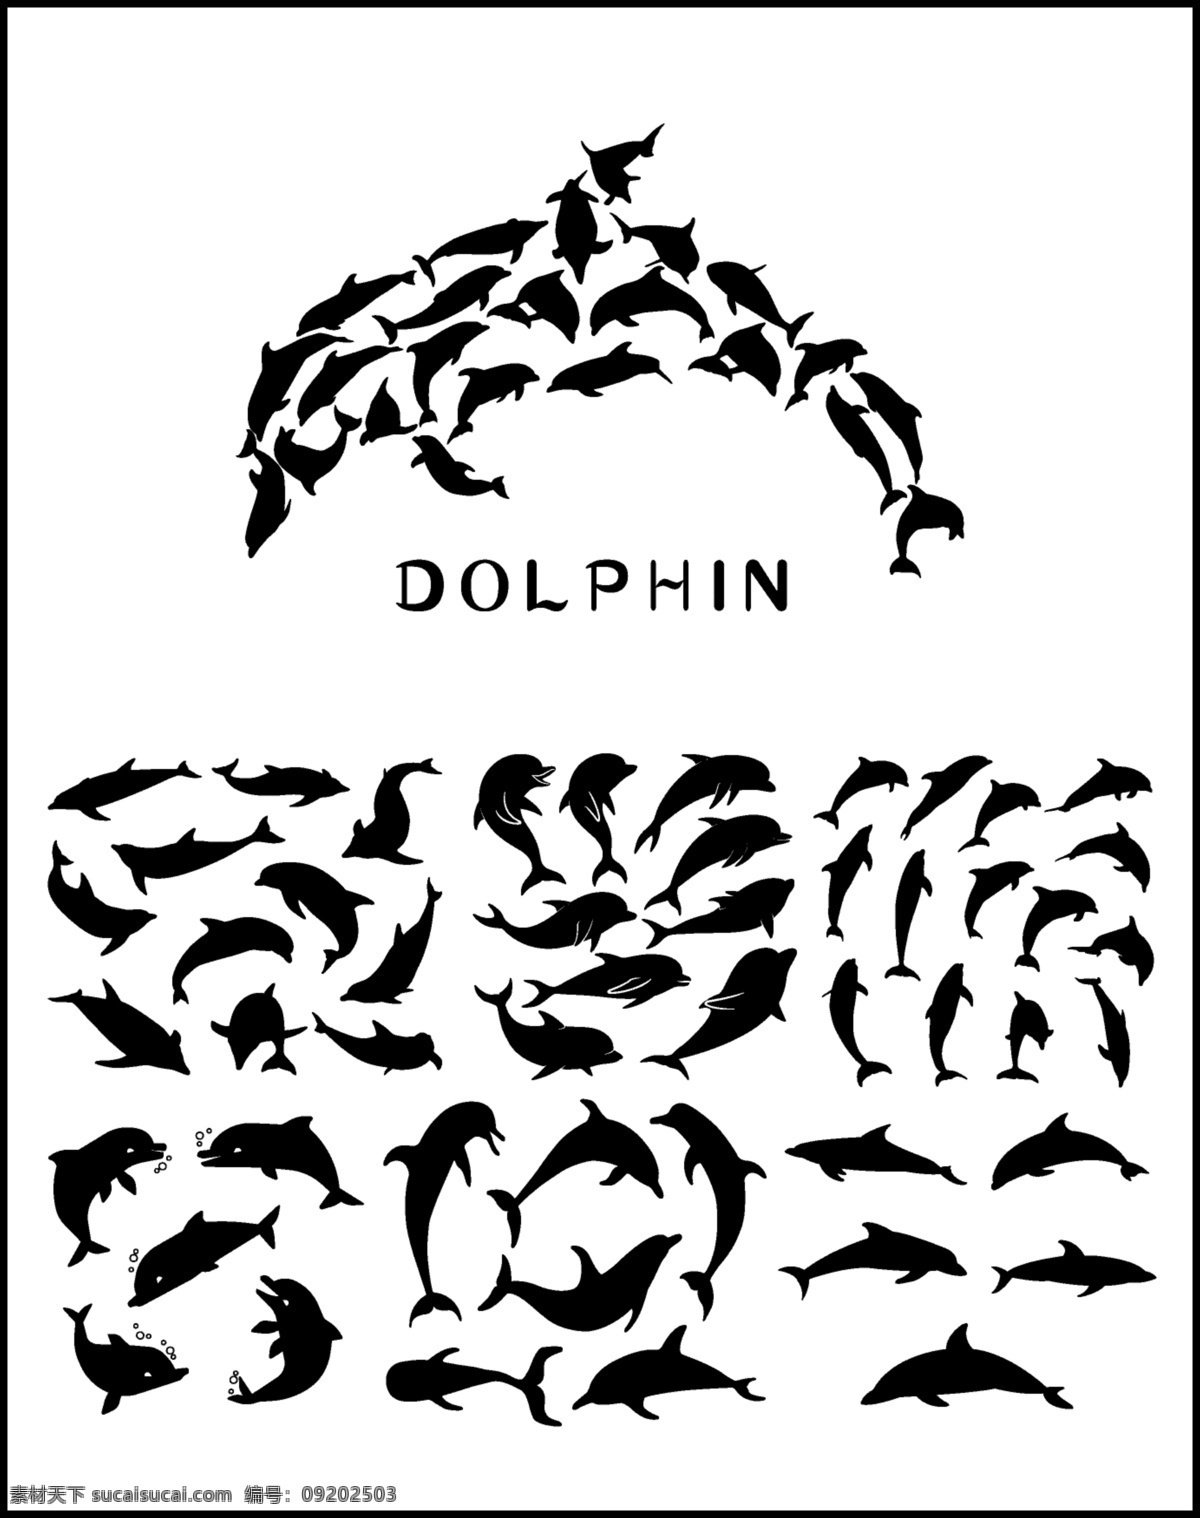 各种 海豚 造型 剪影 矢量 元素 跳跃 海洋 哺乳动物 鱼类 鱼 海鱼 豚 dolphin 生物世界 野生动物